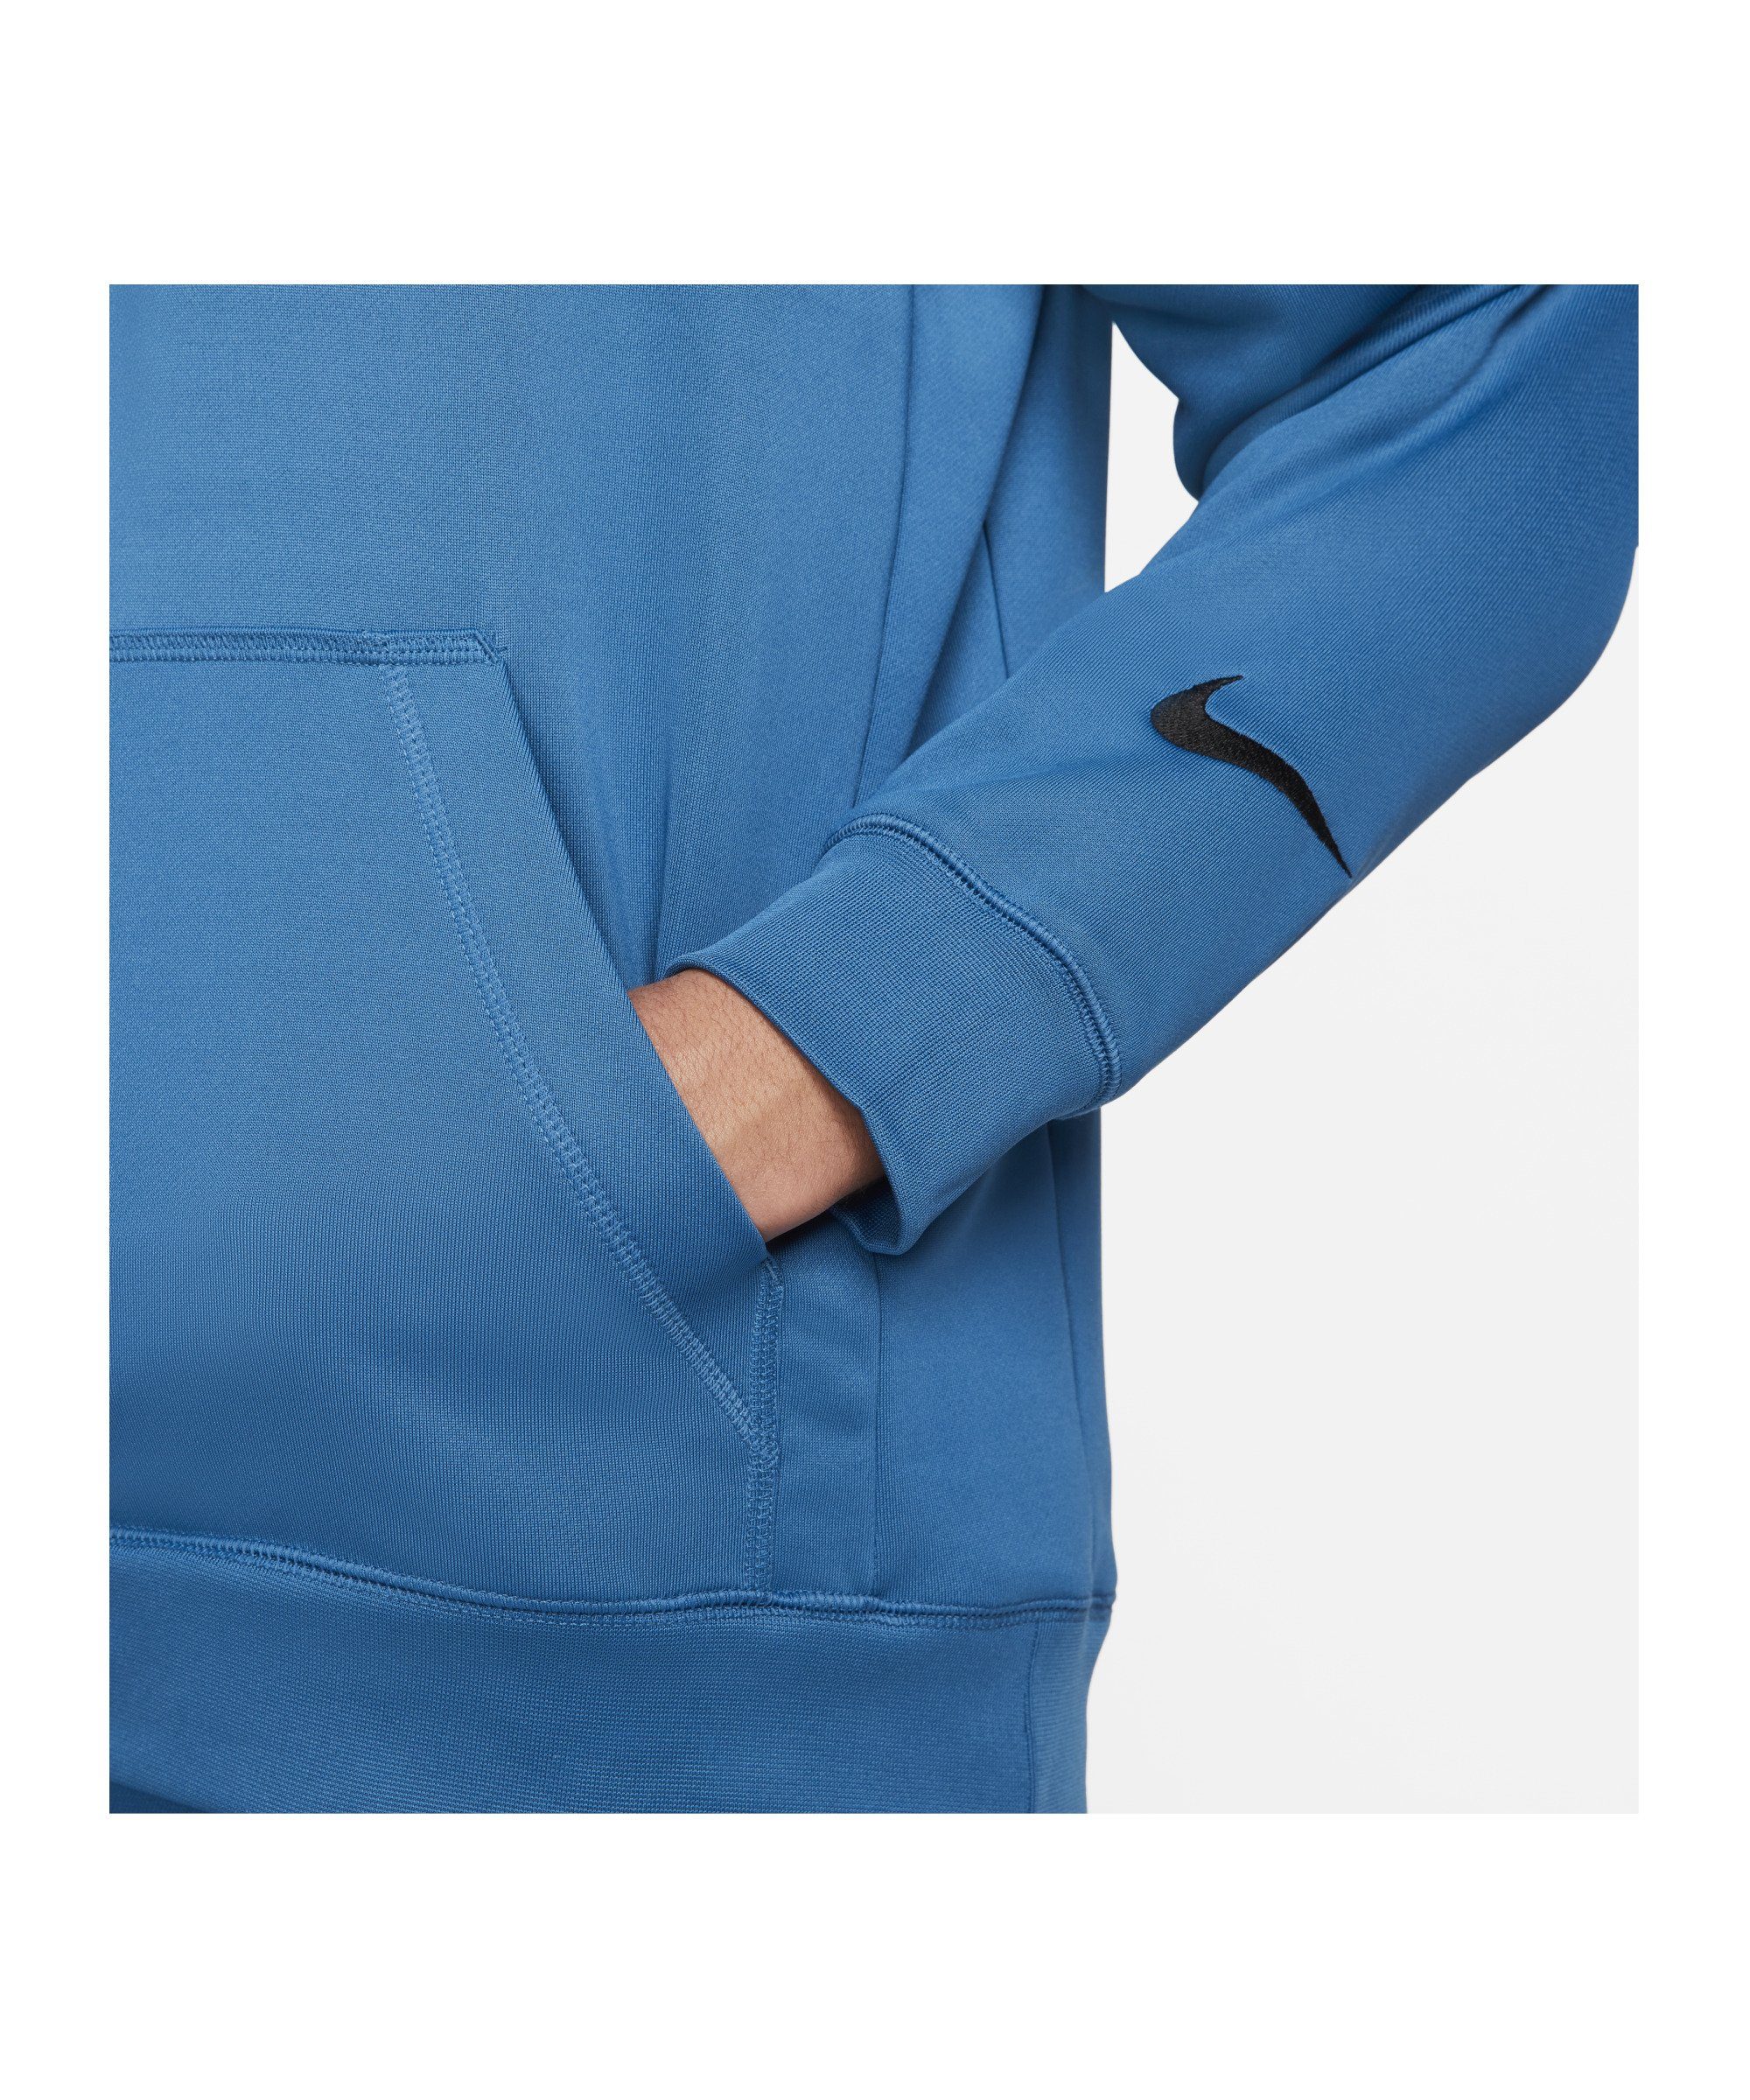 Sportswear blauweissschwarz Nike Fleece F.C. Hoody Sweatshirt